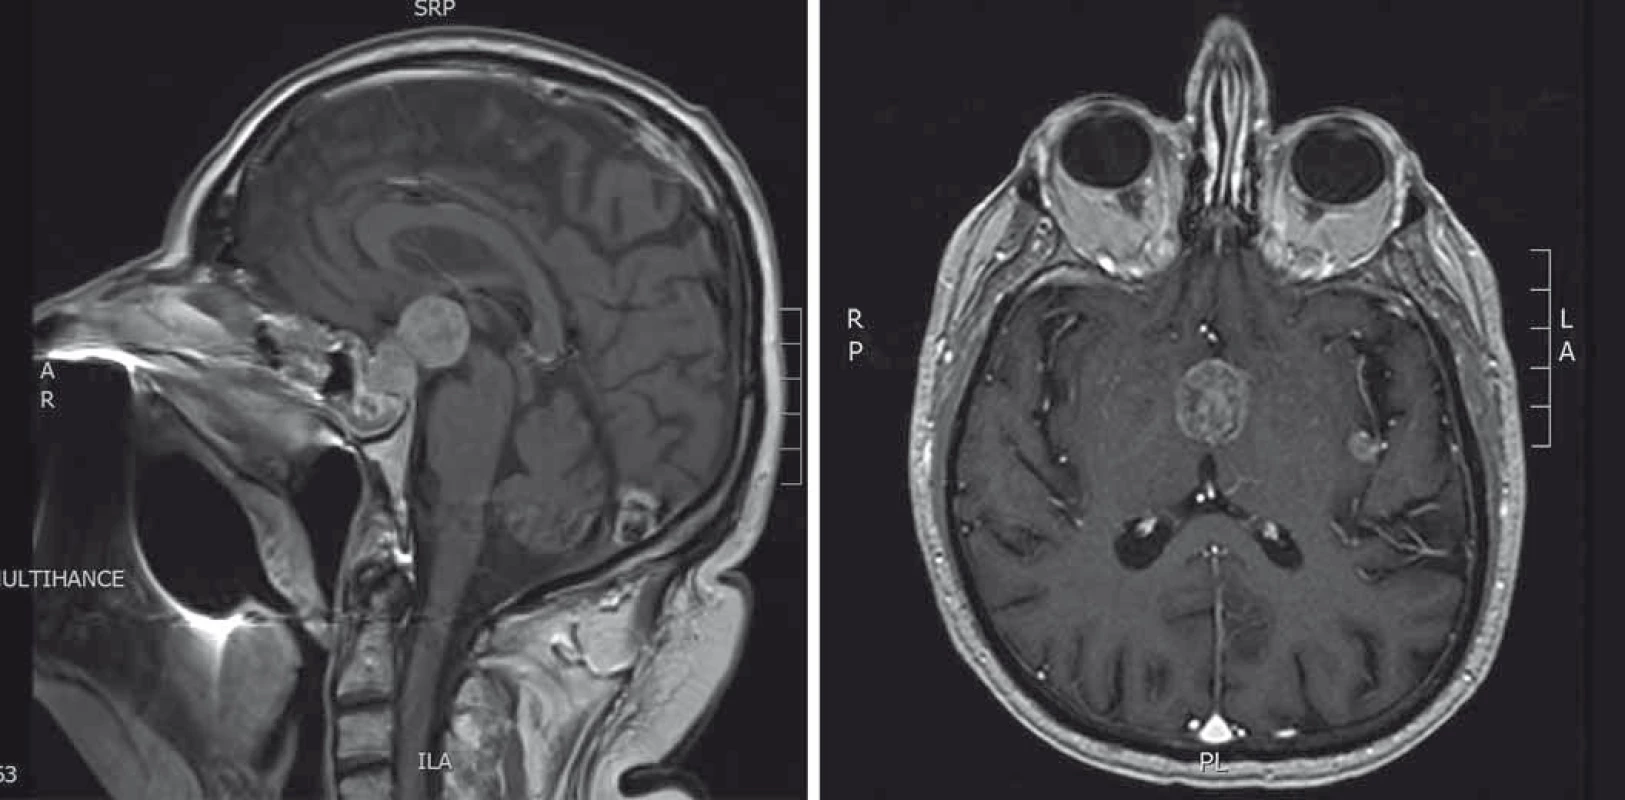 A. MRI hypofýzy (T1 vážené sagitální skeny s kontrastní látkou). Stav po transfenoidální operaci. Progrese velikosti tumorózní expanze. B. MRI hypofýzy (T1 vážené axiální skeny s kontrastní látkou). Stav po radioterapii. Supraselární tumorózní expanze, menší tumorózní ložisko v oblasti inzuly vlevo.